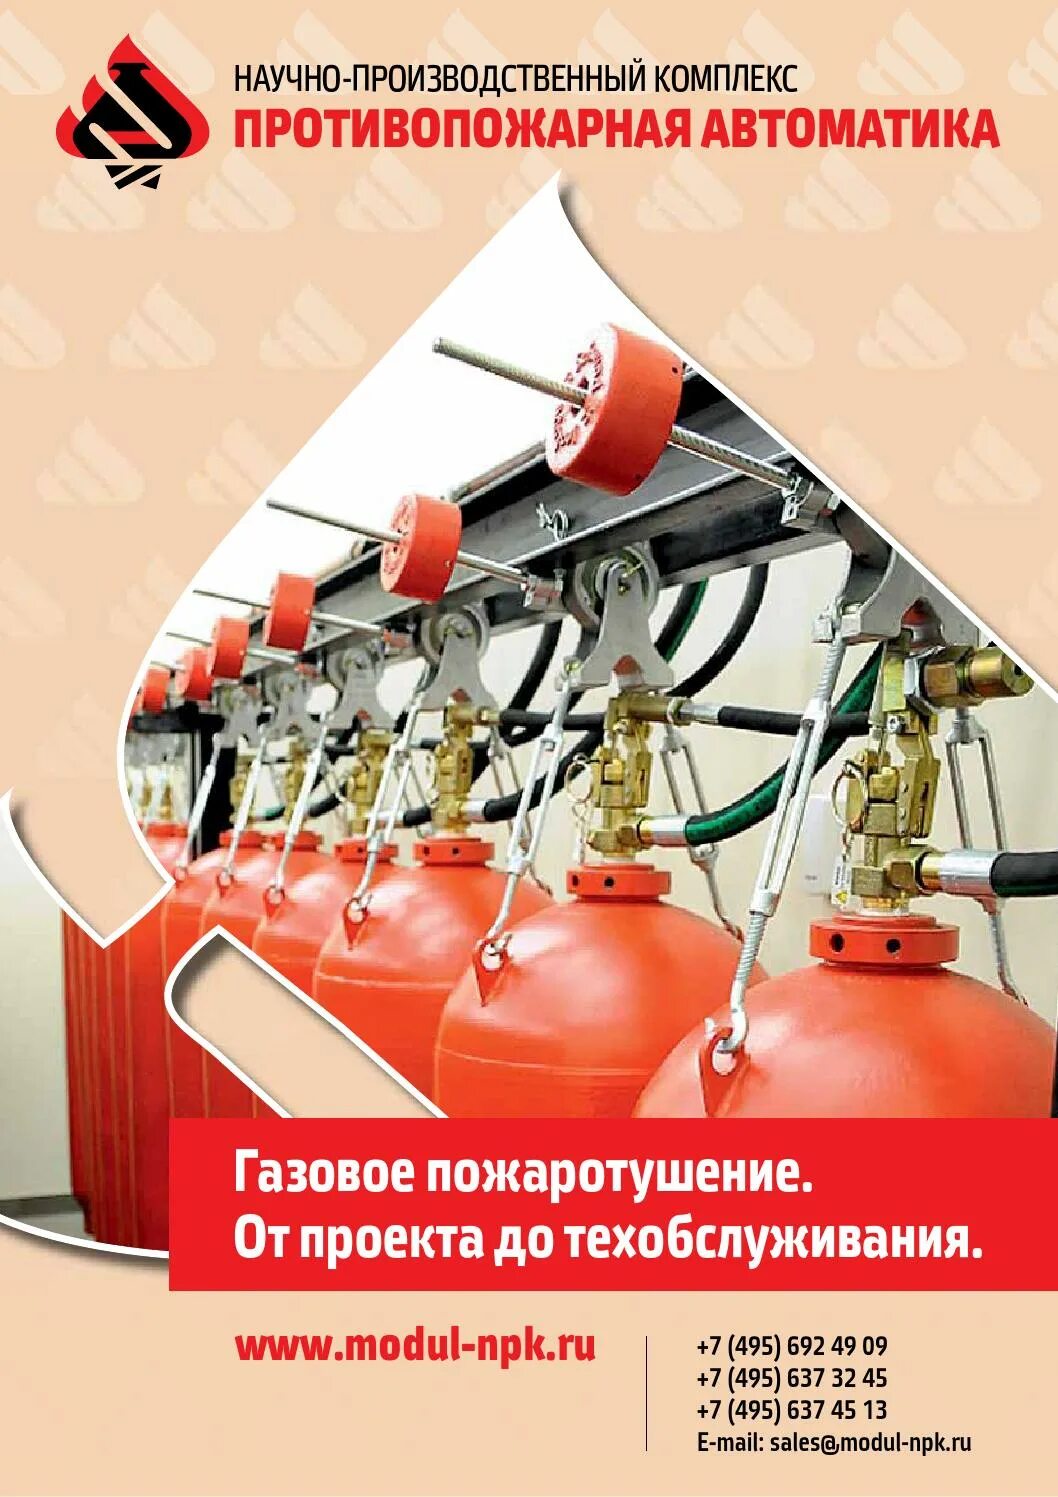 Противопожарная защита. Средства пожарной автоматики. Пожарная автоматика. Огнестойкая защита. Пожар автоматика